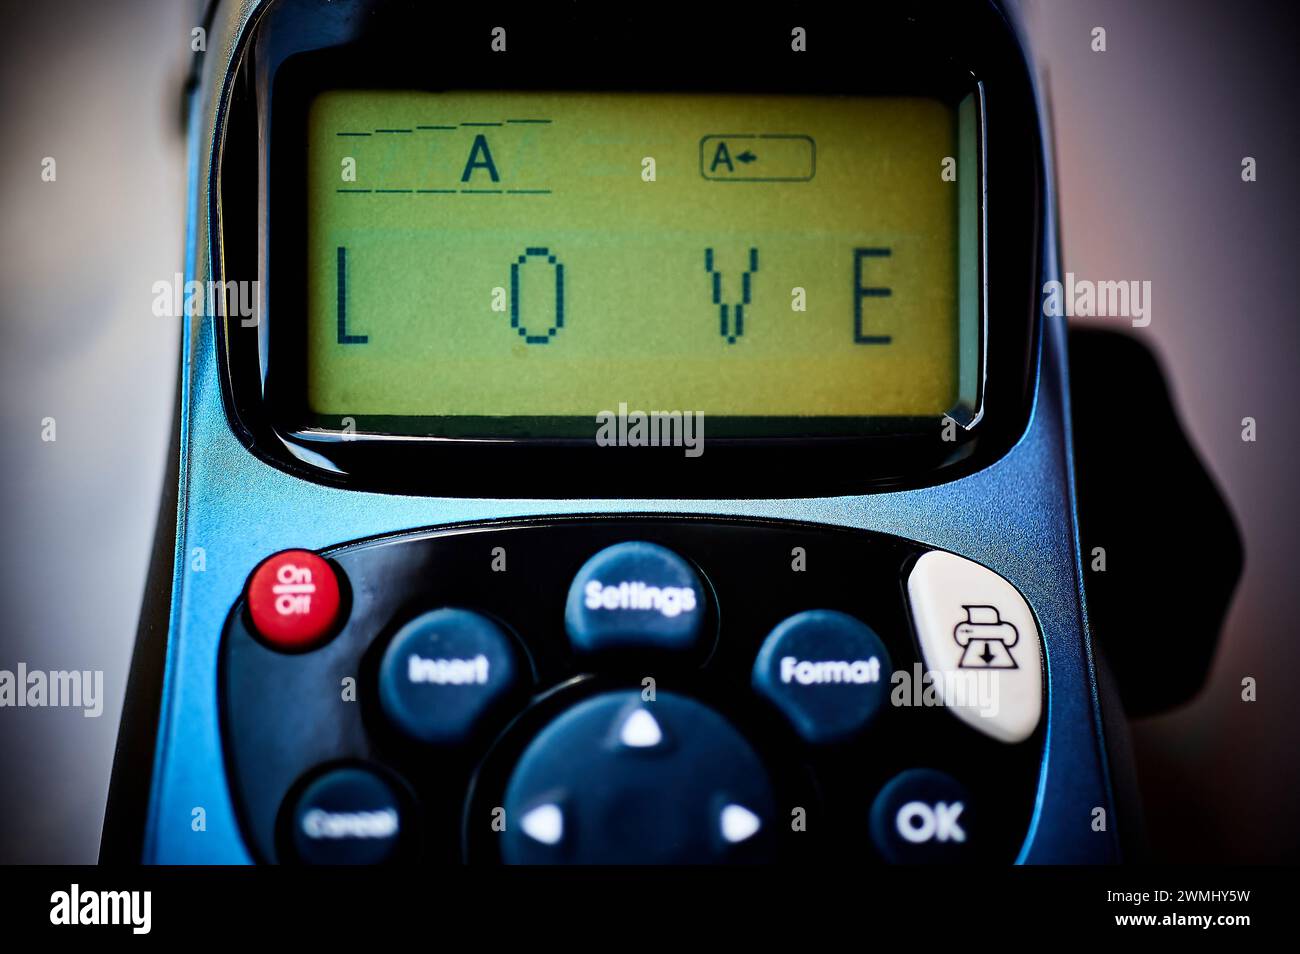 Etichettatrice che mostra la parola amore sul suo schermo, simboleggia un'espressione moderna e tecnologica dell'amore. Foto Stock